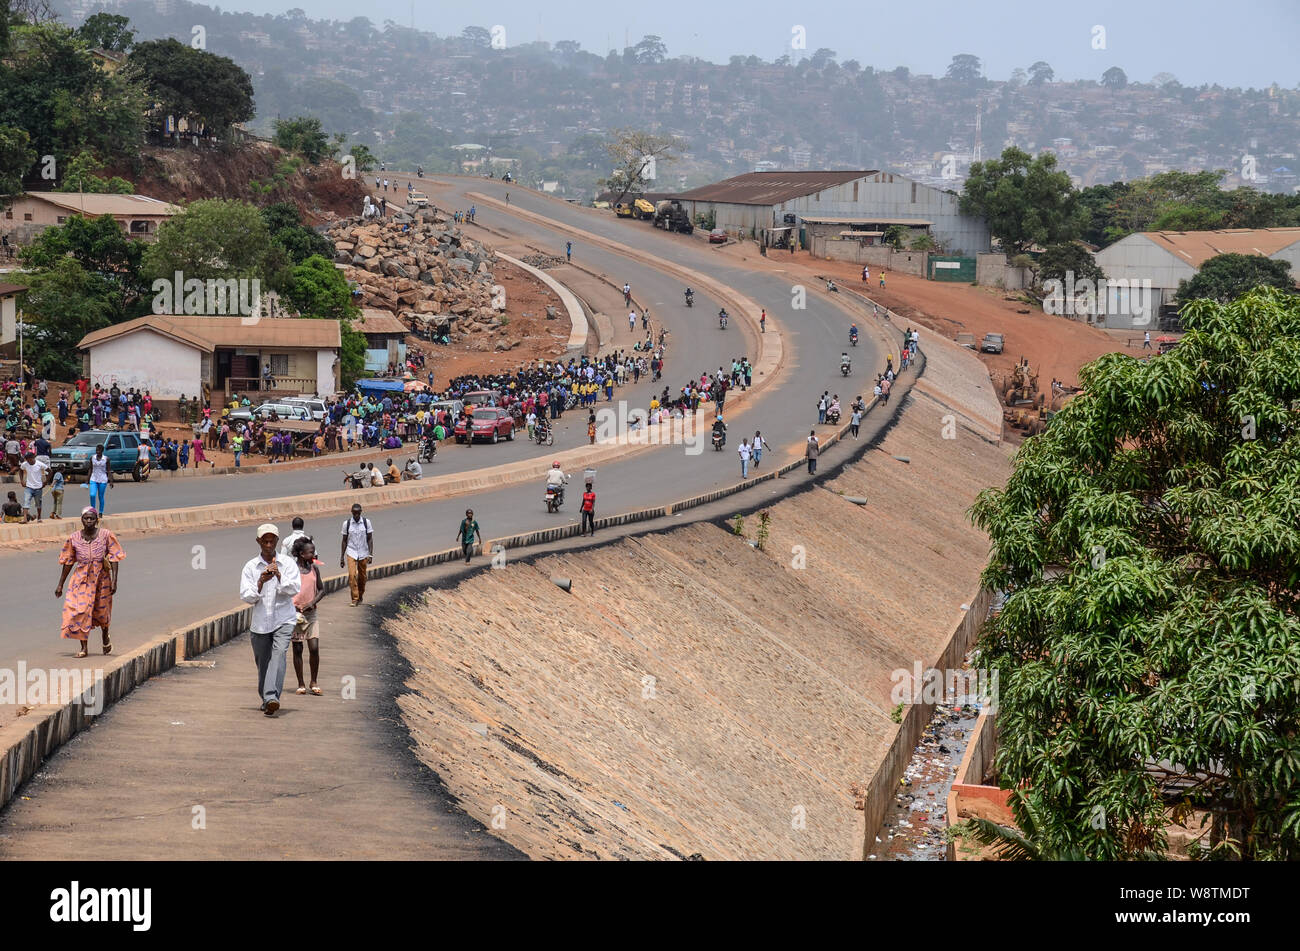 Street scene in Freetown, Sierra Leone in 2014 Stock Photo